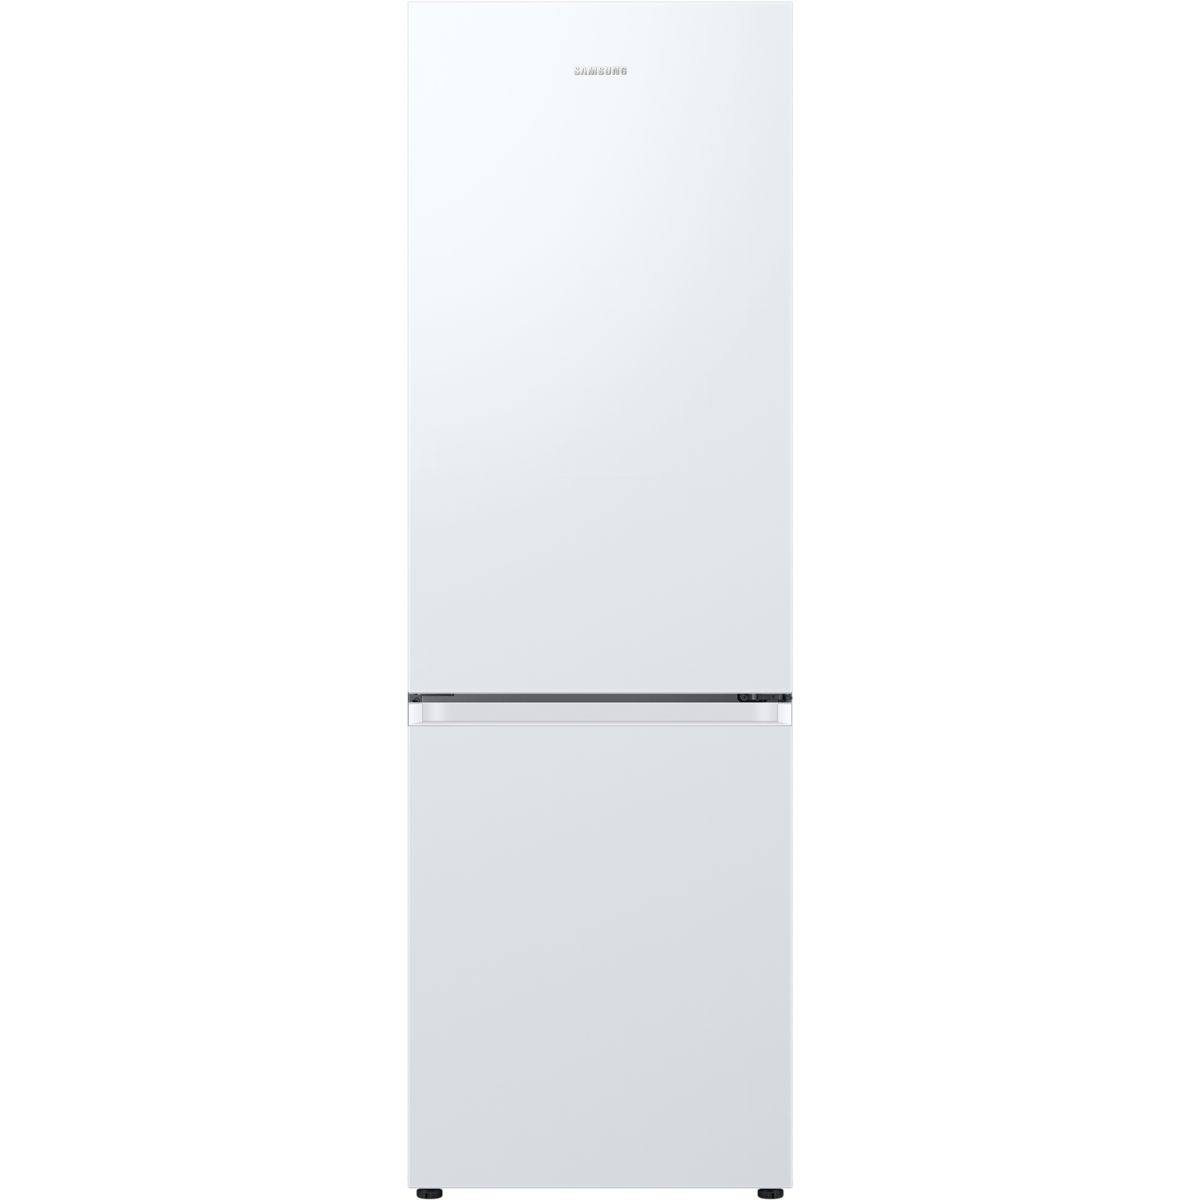 Réfrigérateur combiné SAMSUNG RB34C600EWW 0